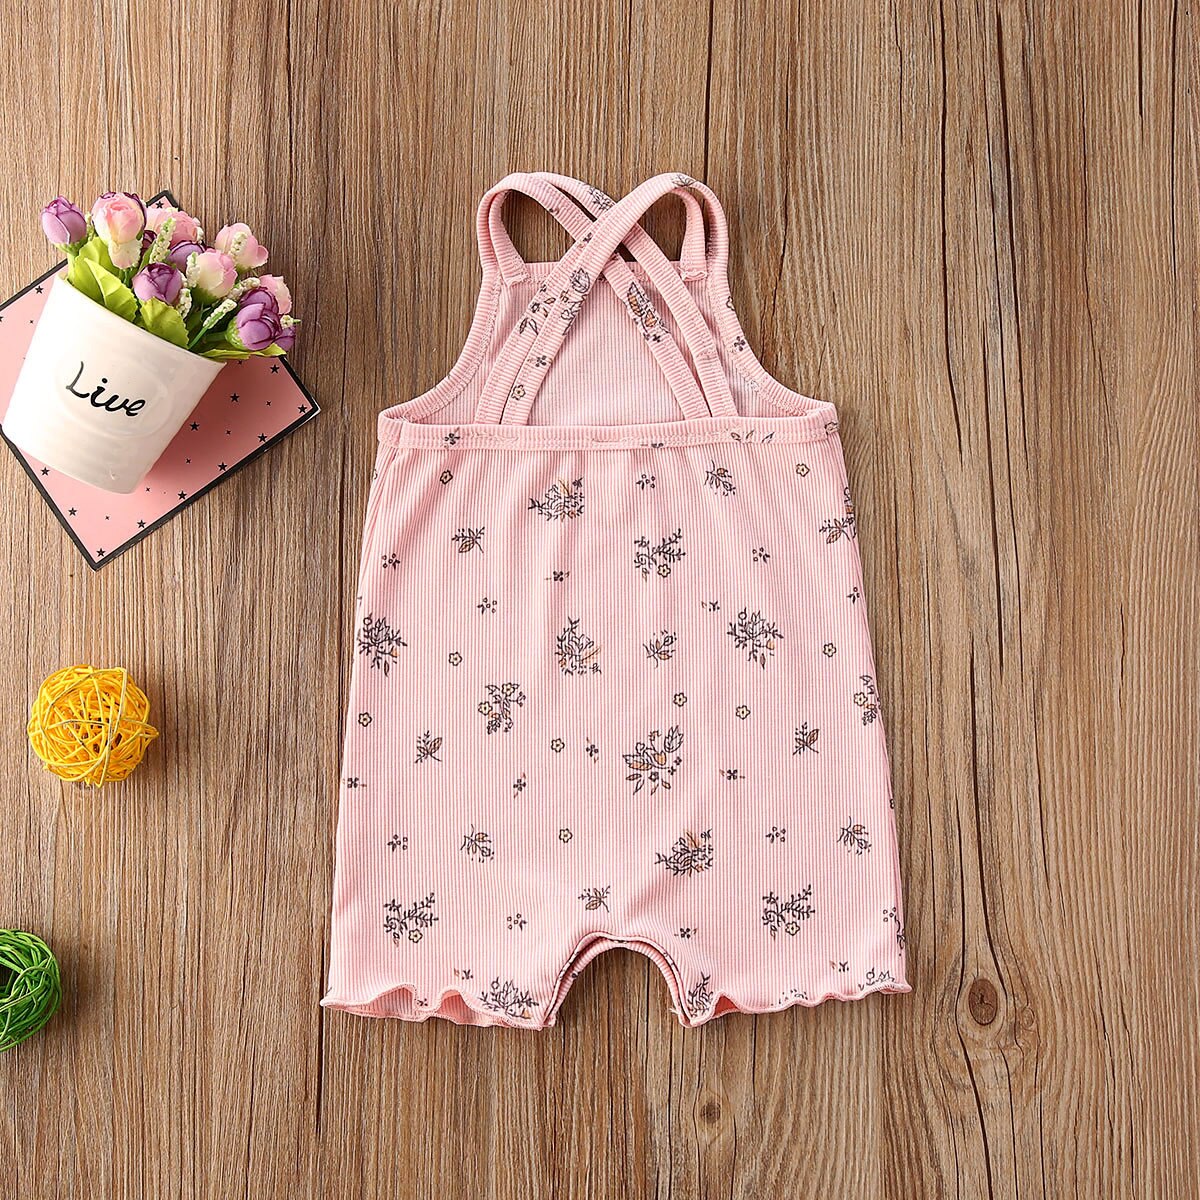 Bộ áo liền quần cotton không tay họa tiết hoa đáng yêu dành cho bé từ 0-18 tháng tuổi